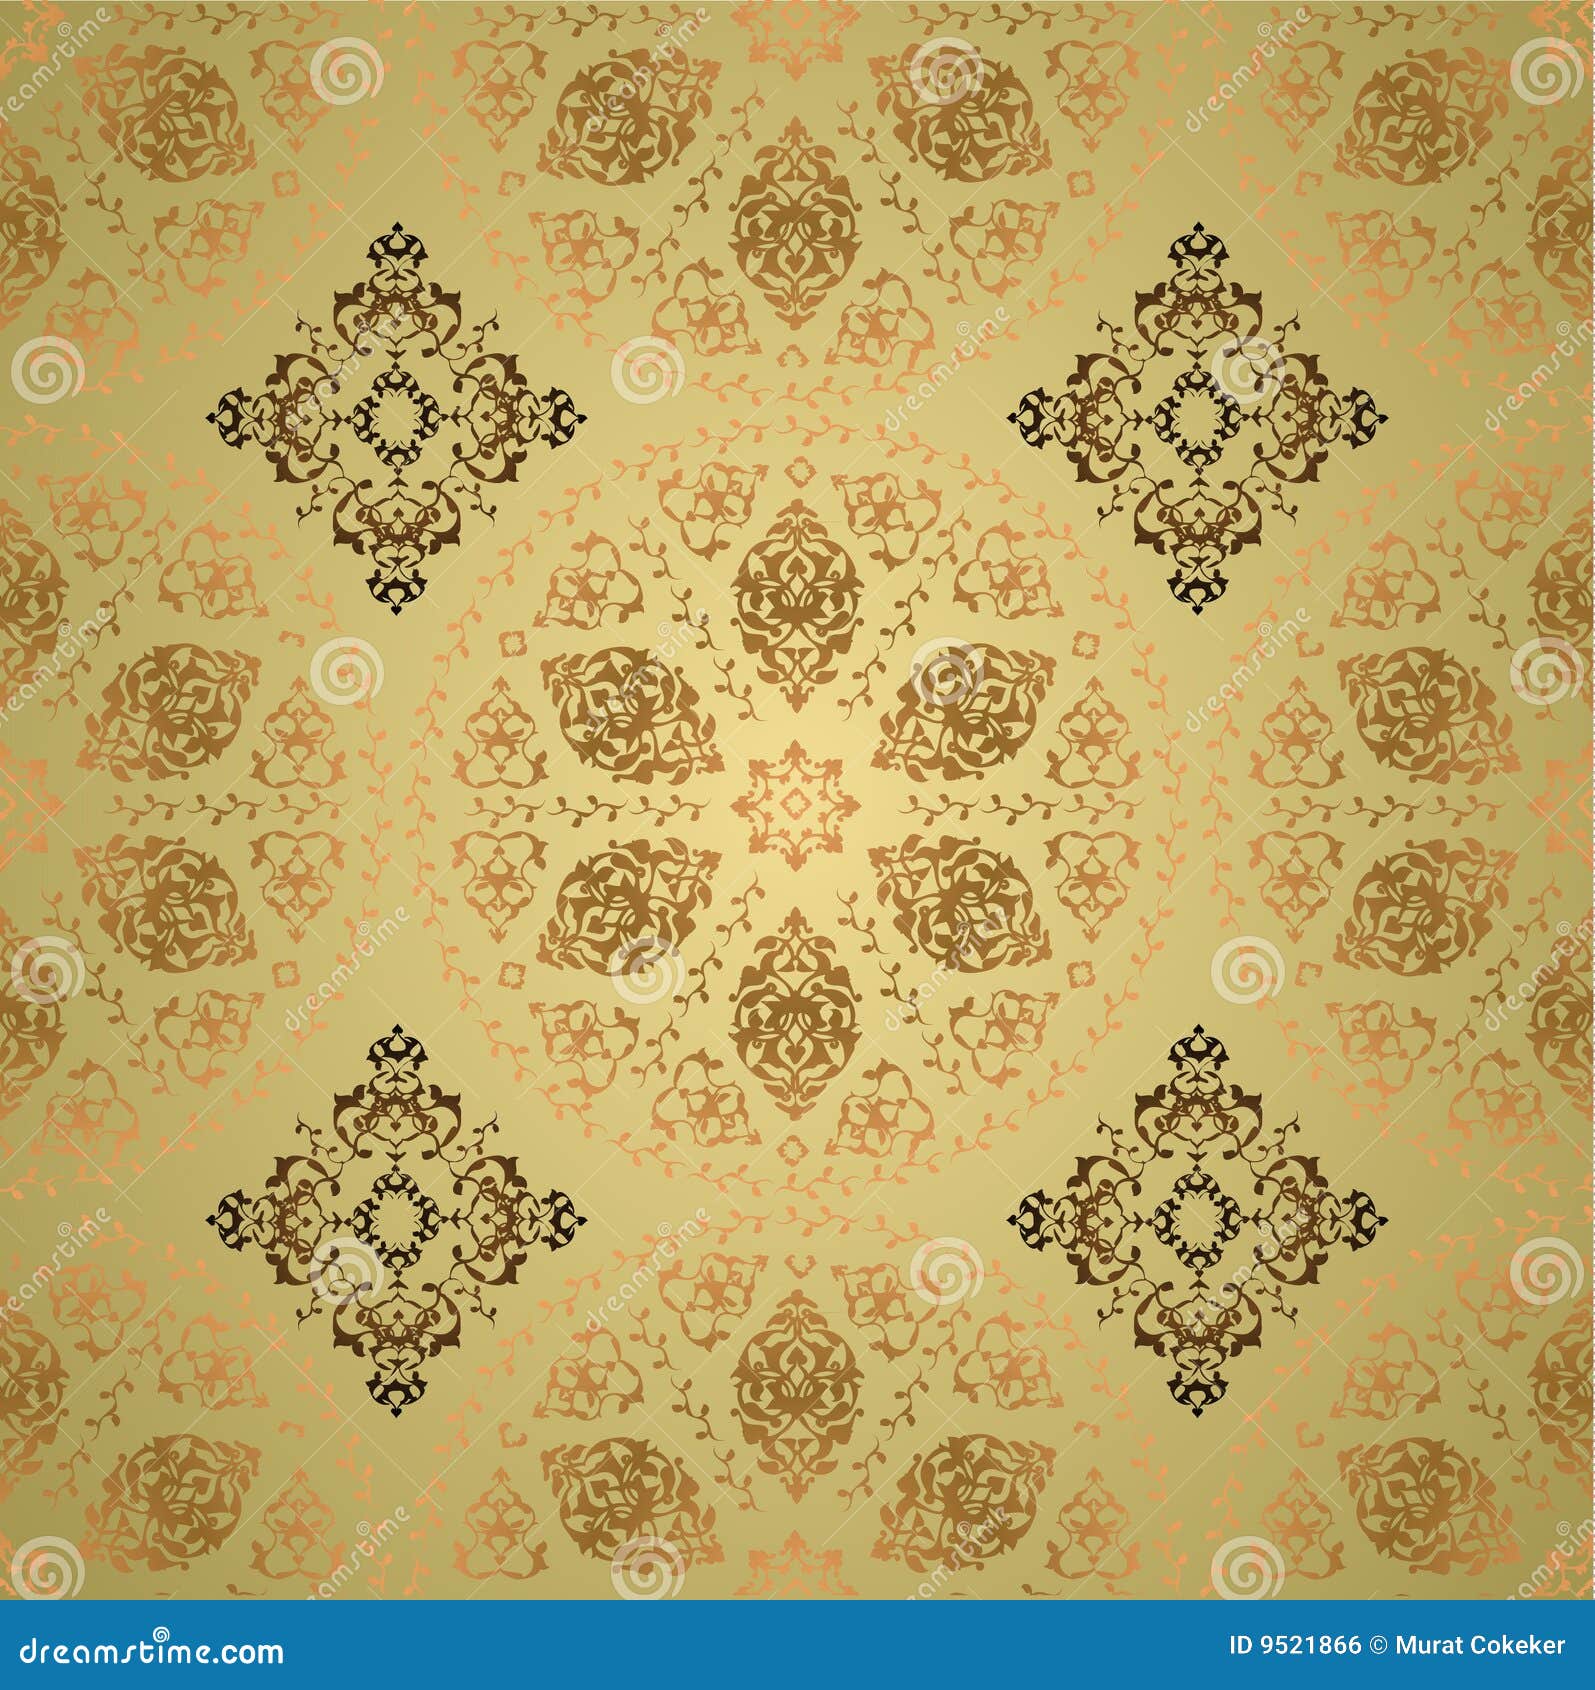 Traditional ottoman turkish seamless tile design.